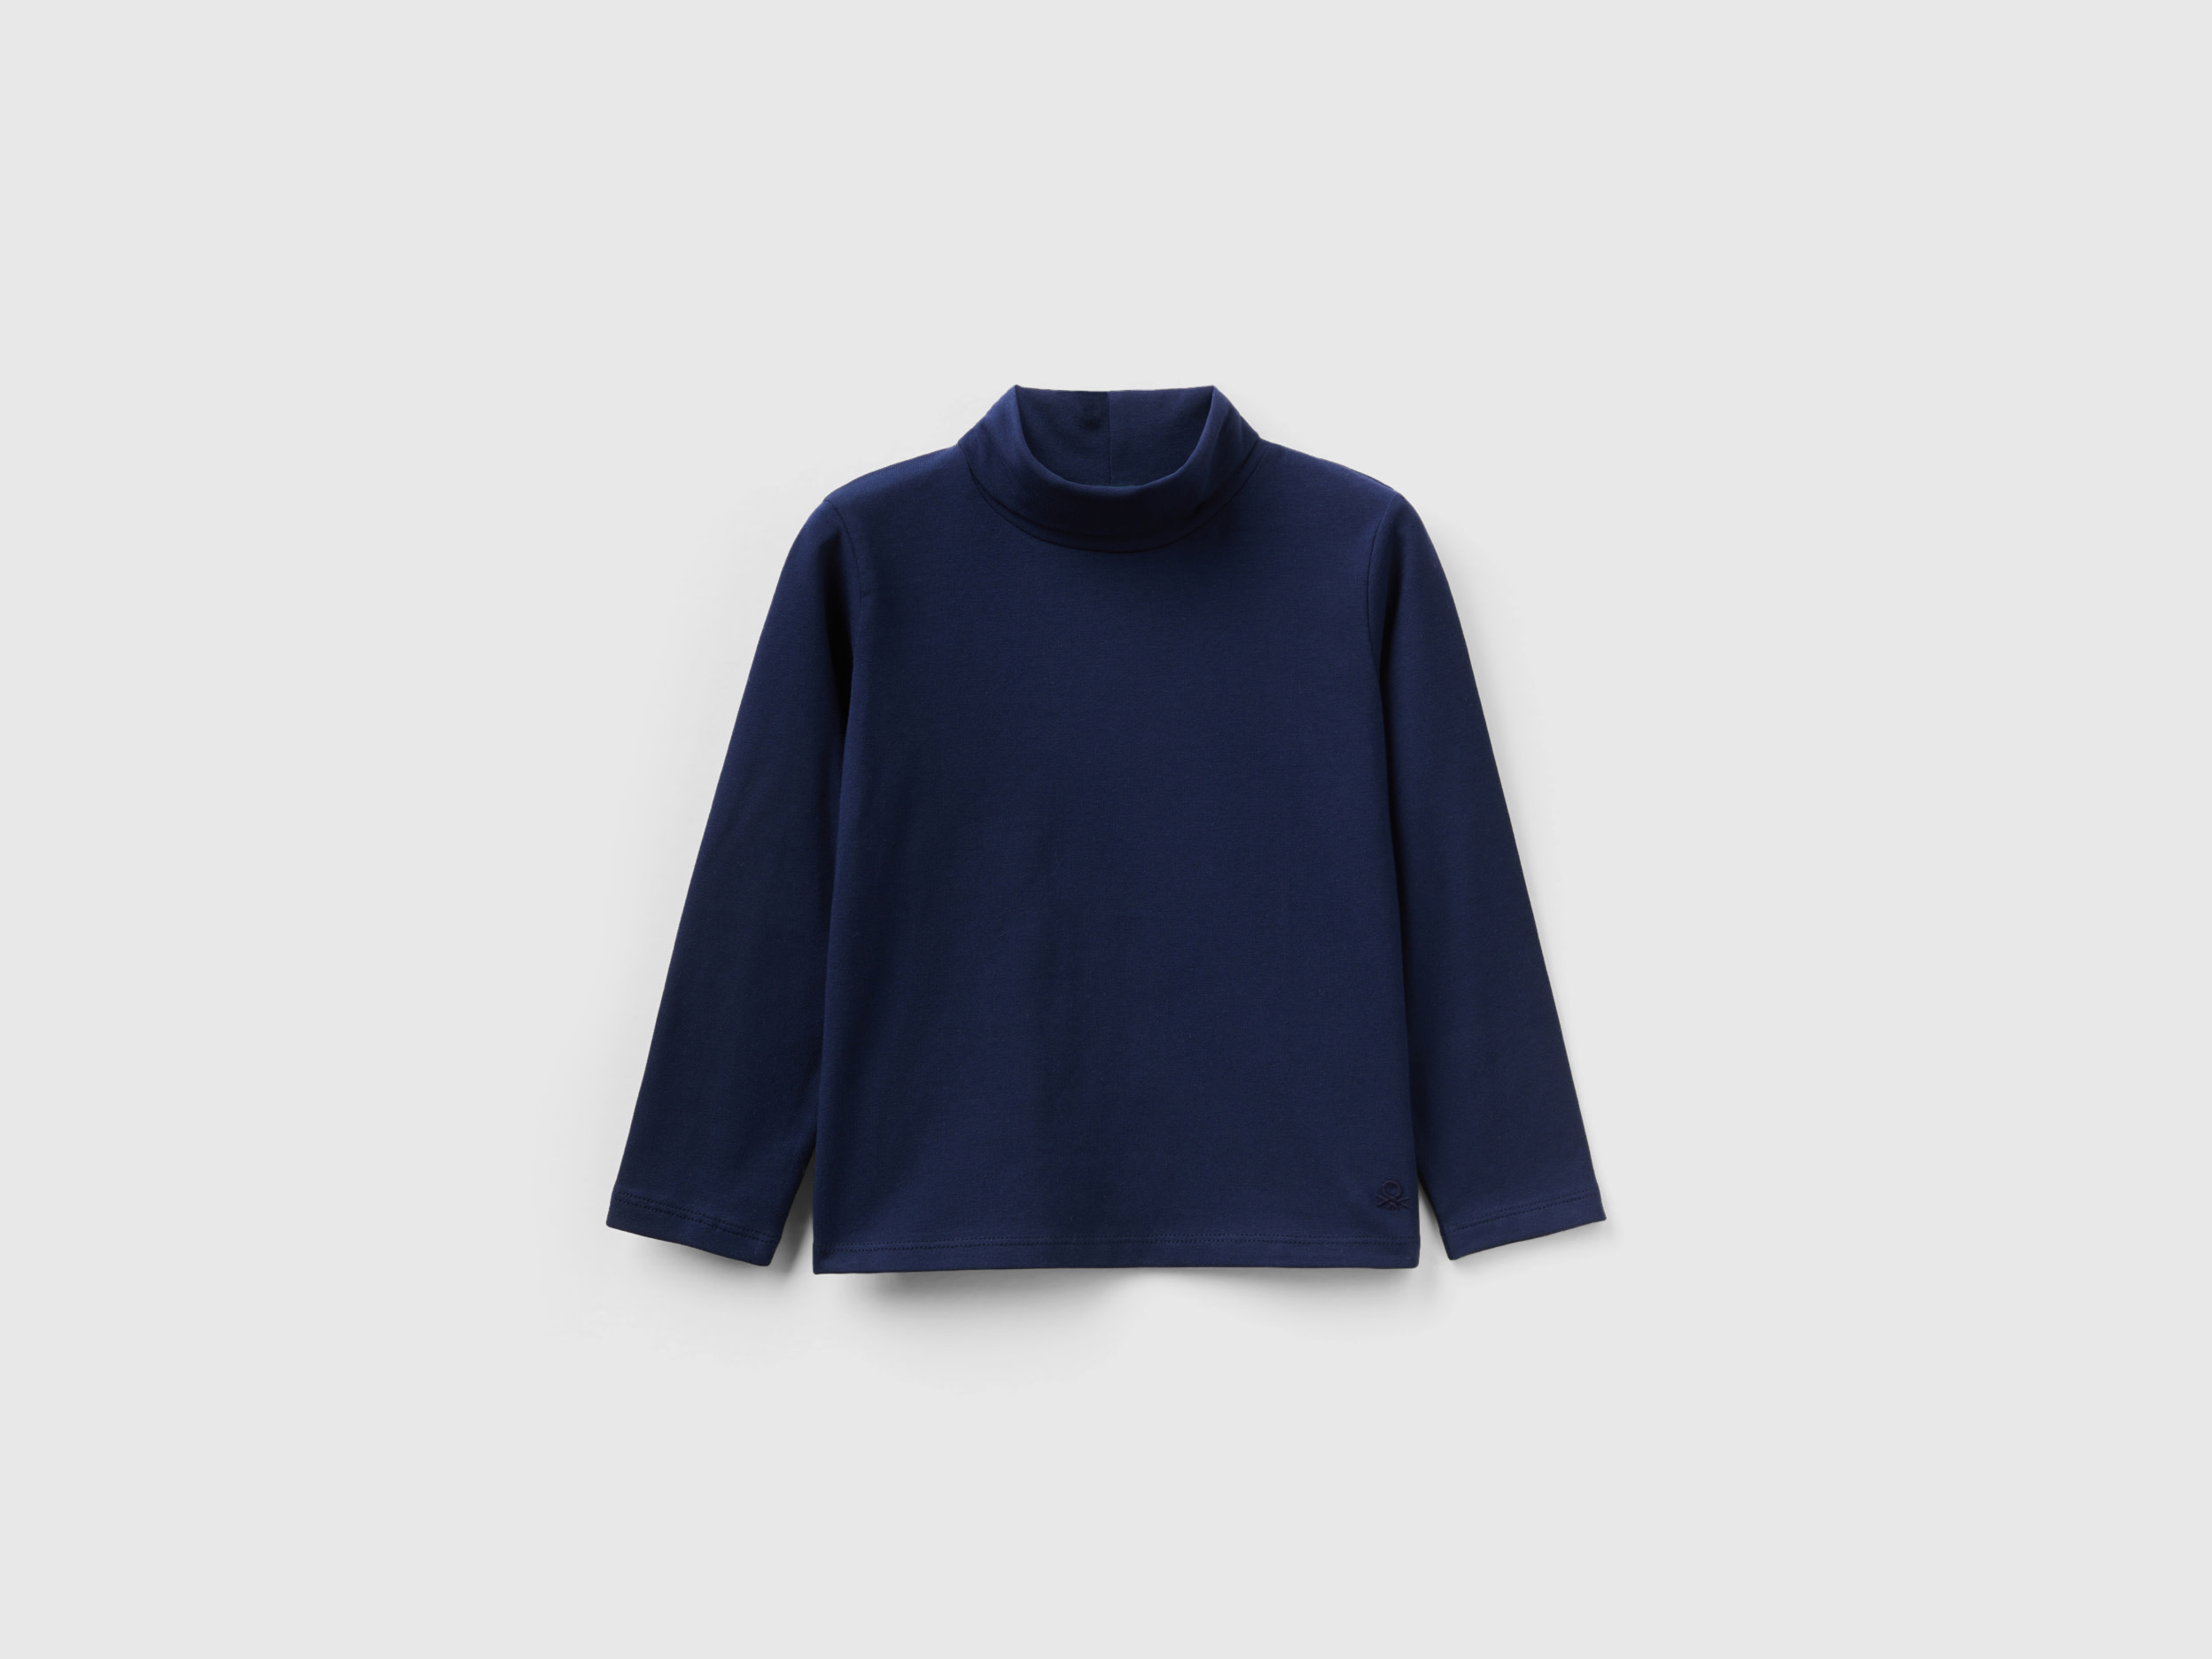 Benetton, Turtleneck T-shirt In Stretch Cotton, size 18-24, Dark Blue, Kids